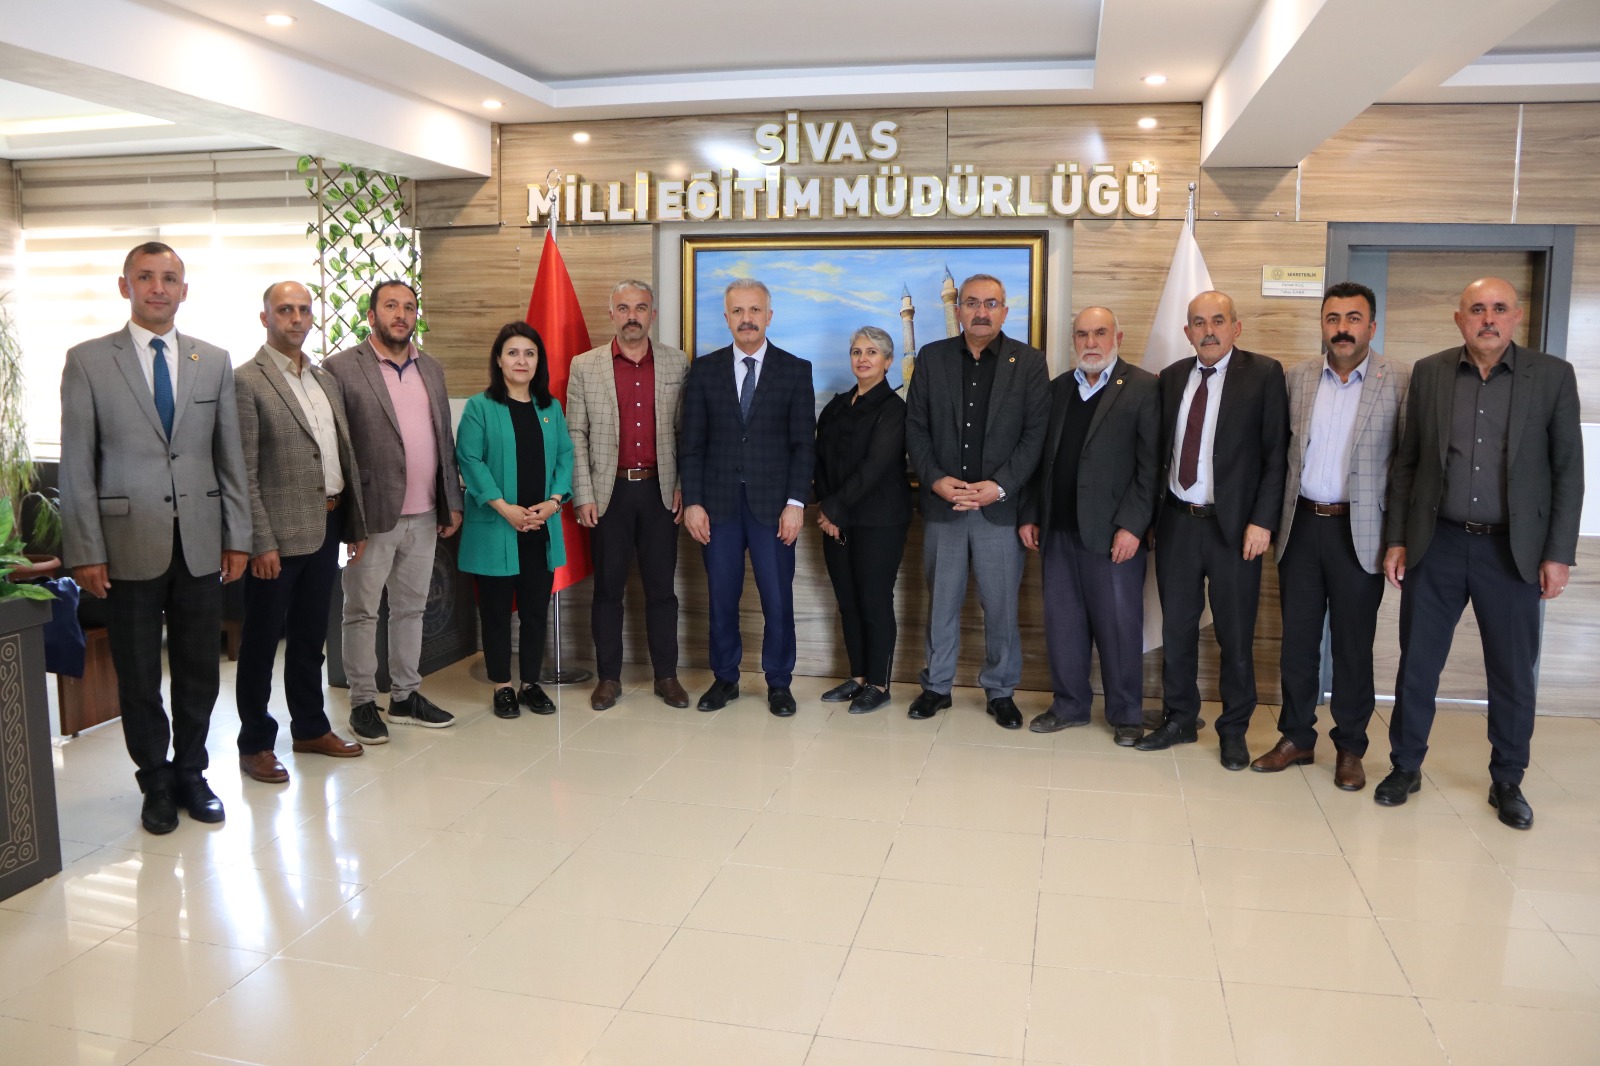 Sivas Muhtarlar Derneği Yönetim ve Üyelerinden Milli Eğitim Müdürü Necati Yenere  Ziyaret